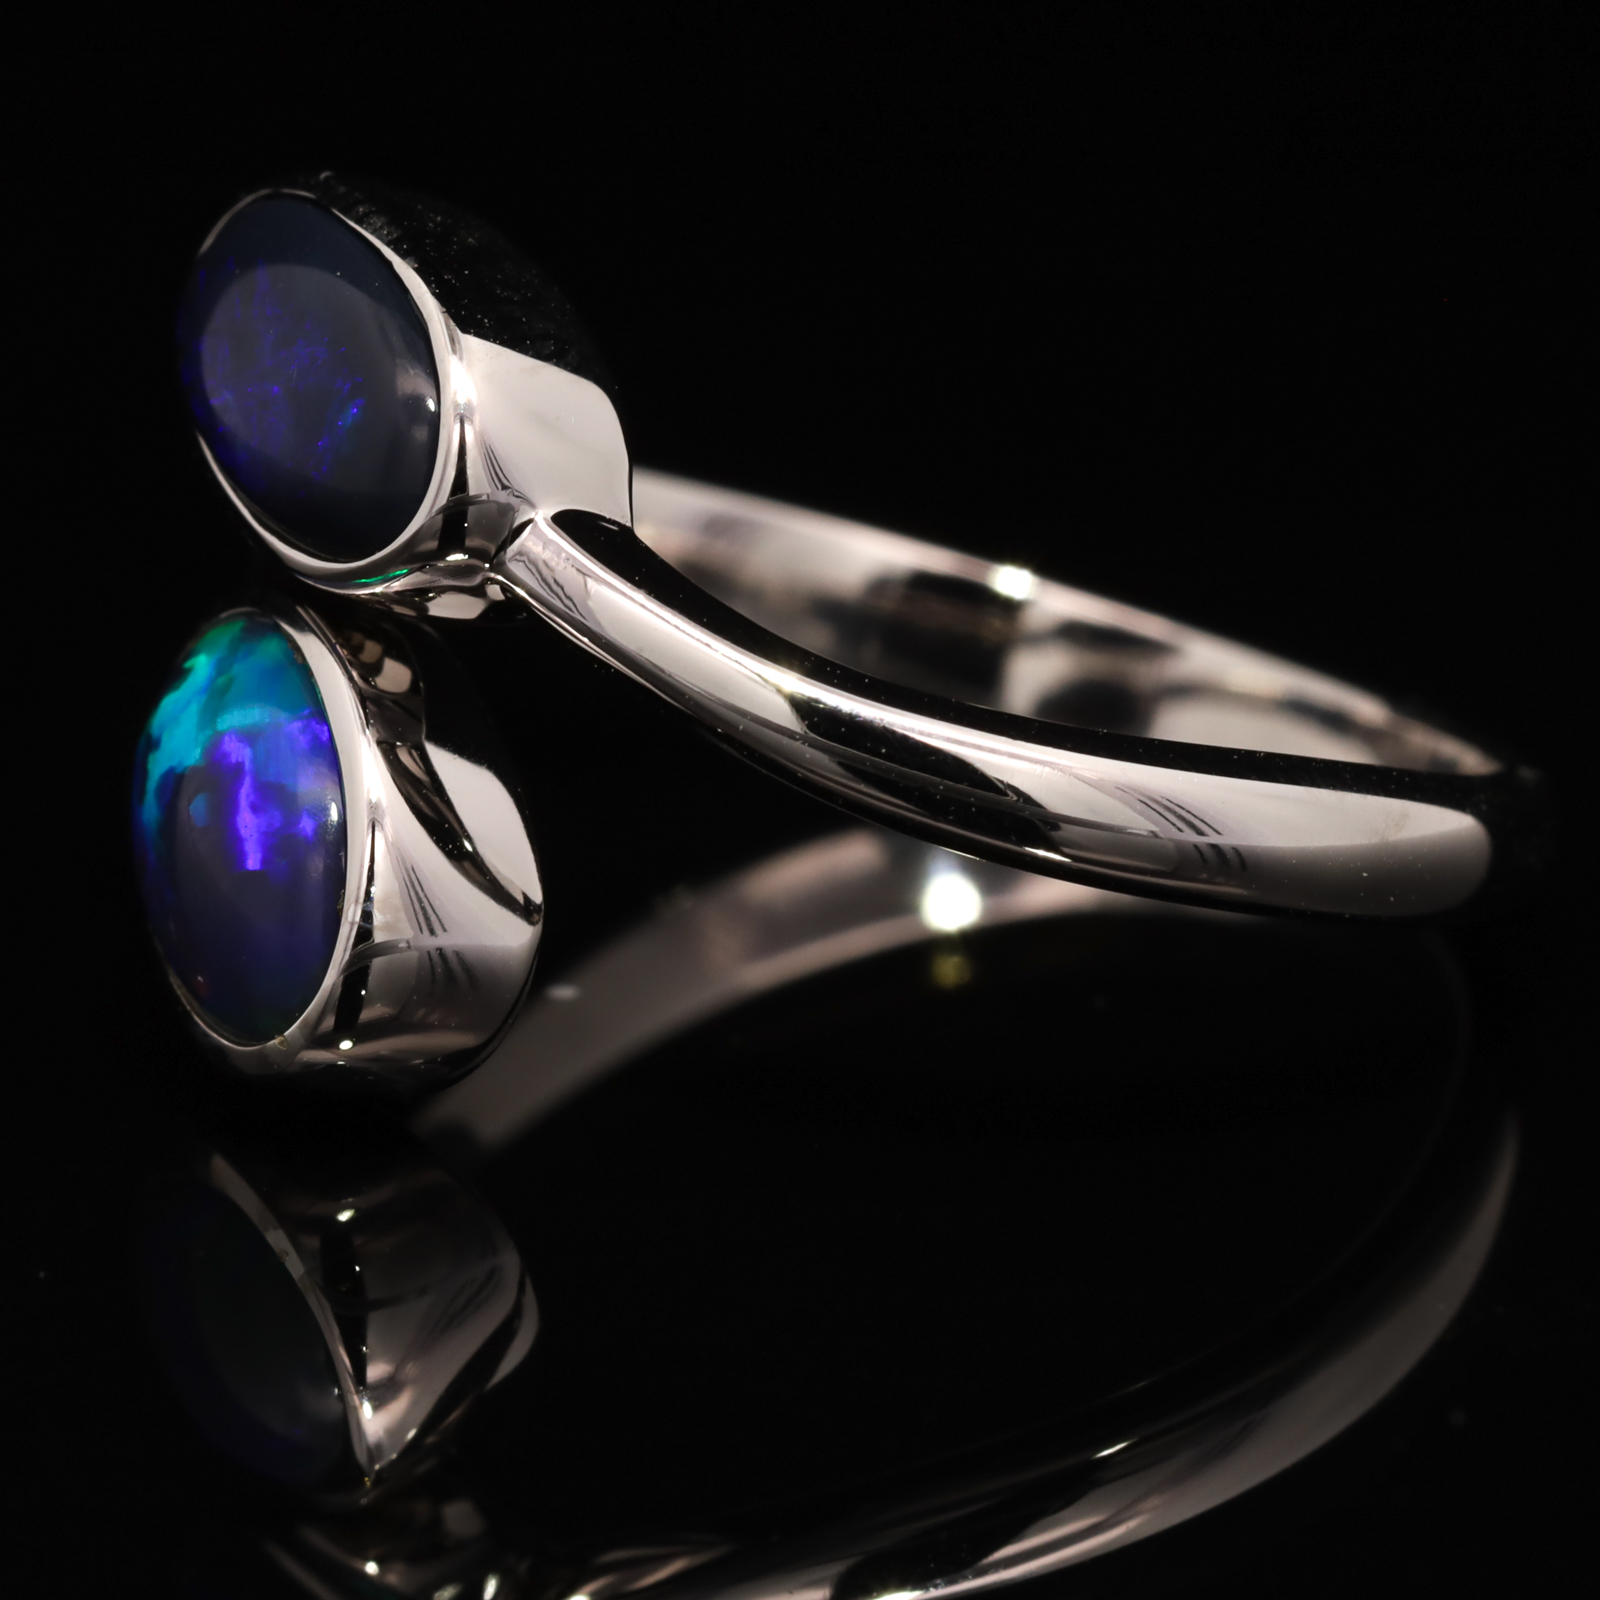 Sterling Silver Blue Green Purple Solid Australian Black Opal Ring